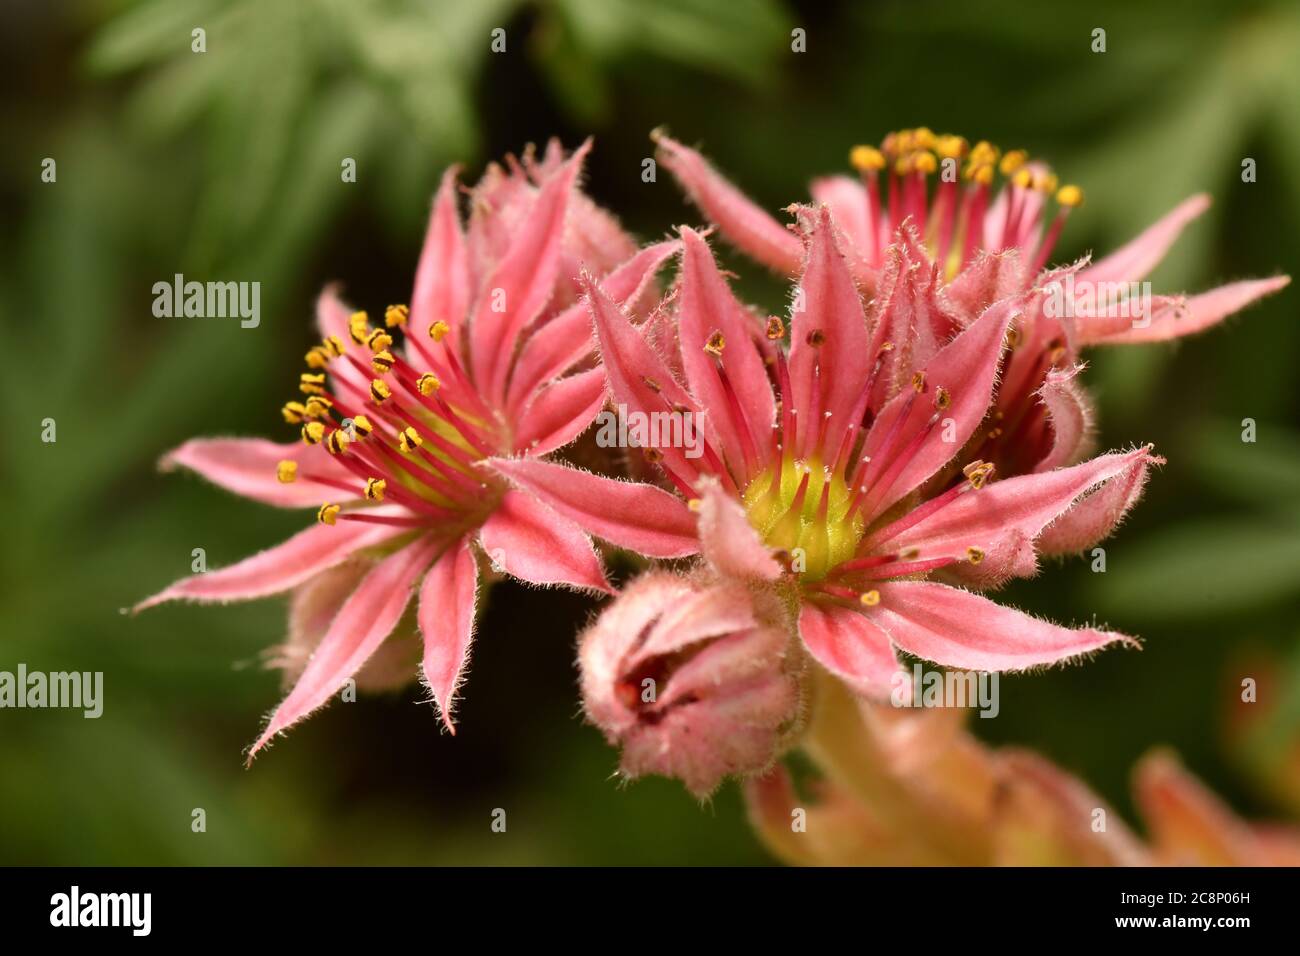 Gros plan de la fleur de Sempervivum, Jobivara ‘conseils rouge’, rosettes pérennes vivaces avec des feuilles vertes charnues. Banque D'Images